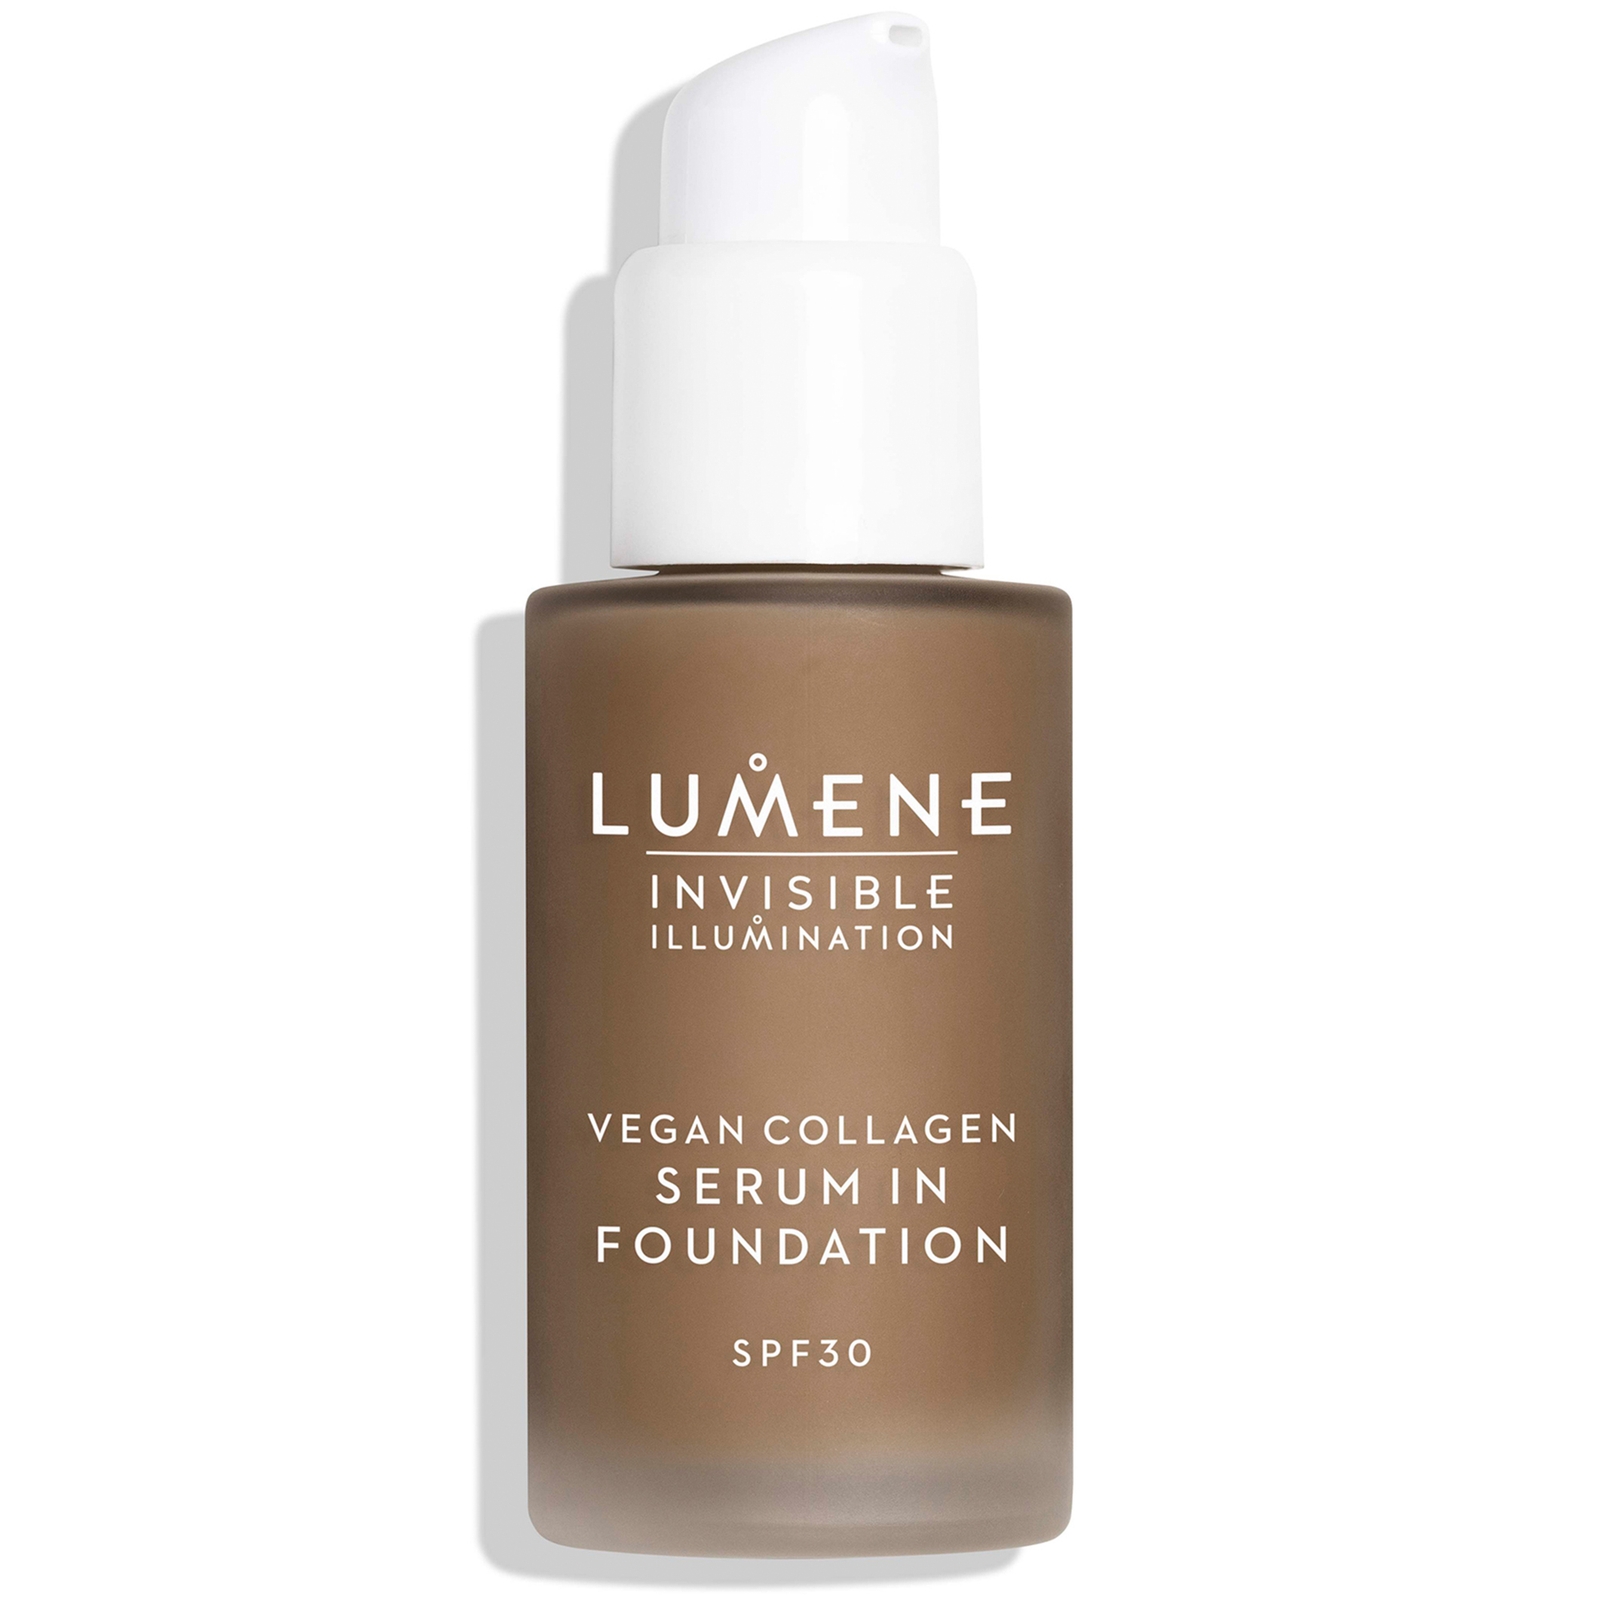 Lumene Invisible Illumination SPF30 Vegan Collagen Serum in Foundation 30ml (Various Shades) - 8 von Lumene